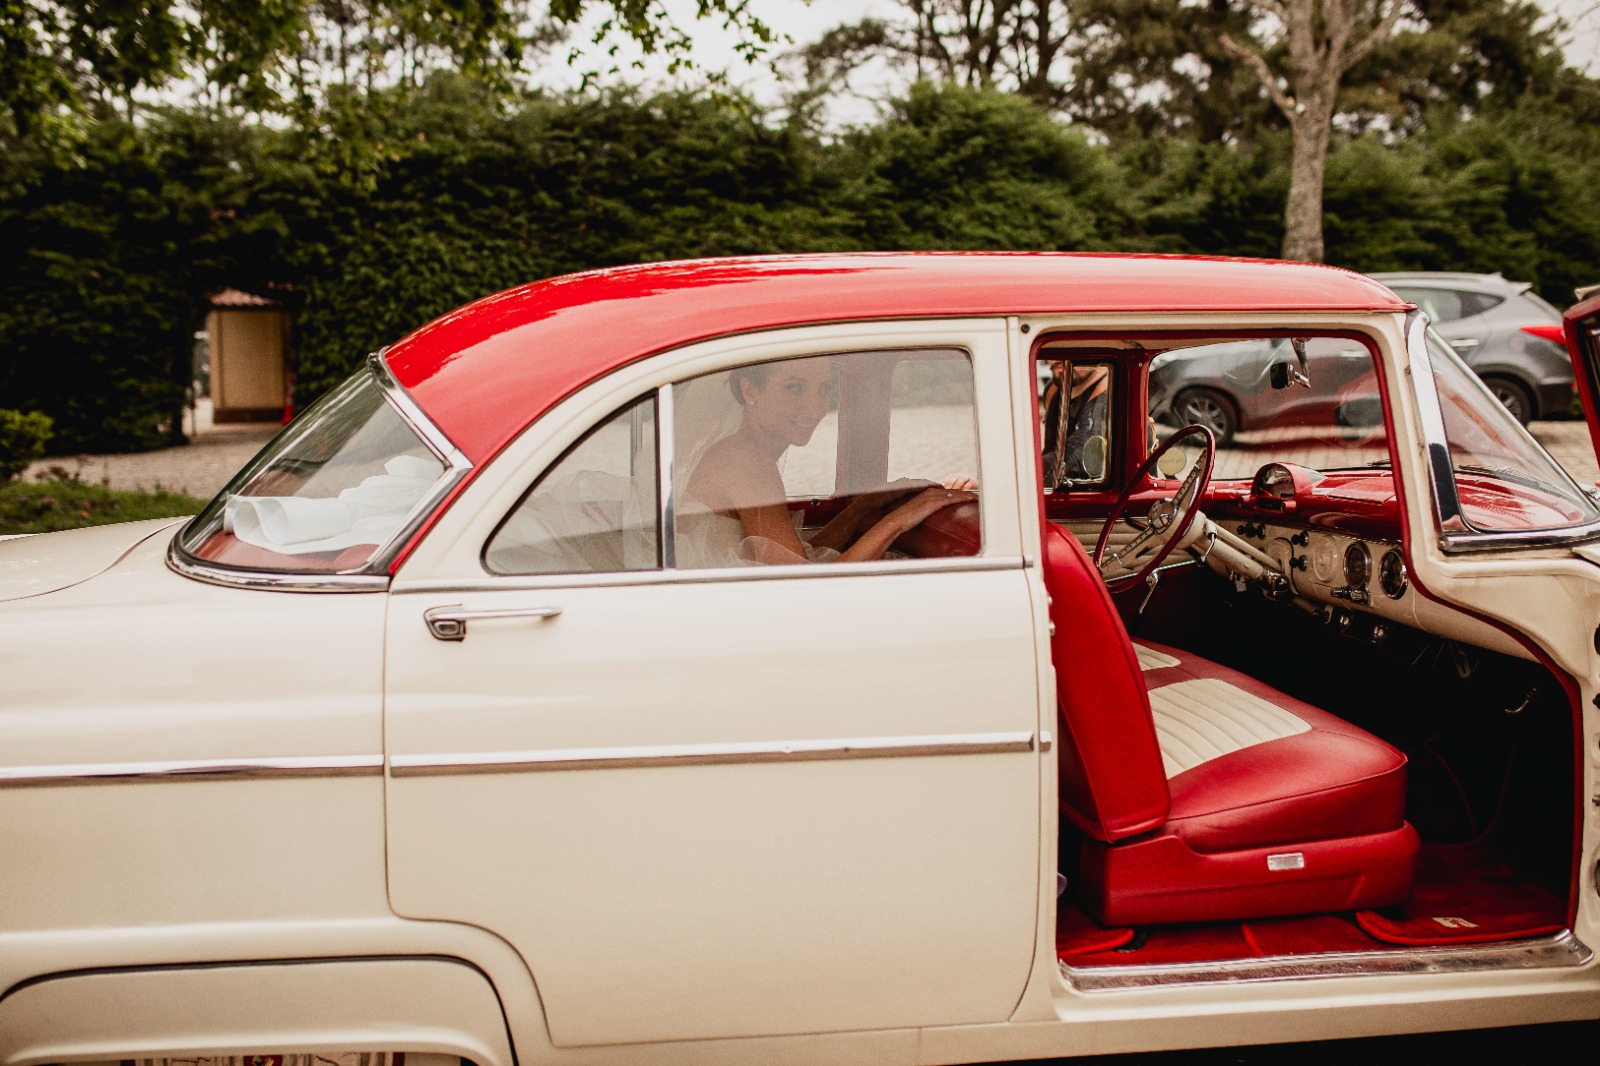 Foto tradicional da noiva saindo do carro indo em direção a cerimônia de casamento | Fotógrafos Melqui Zago Fotografia e Pam Passos 